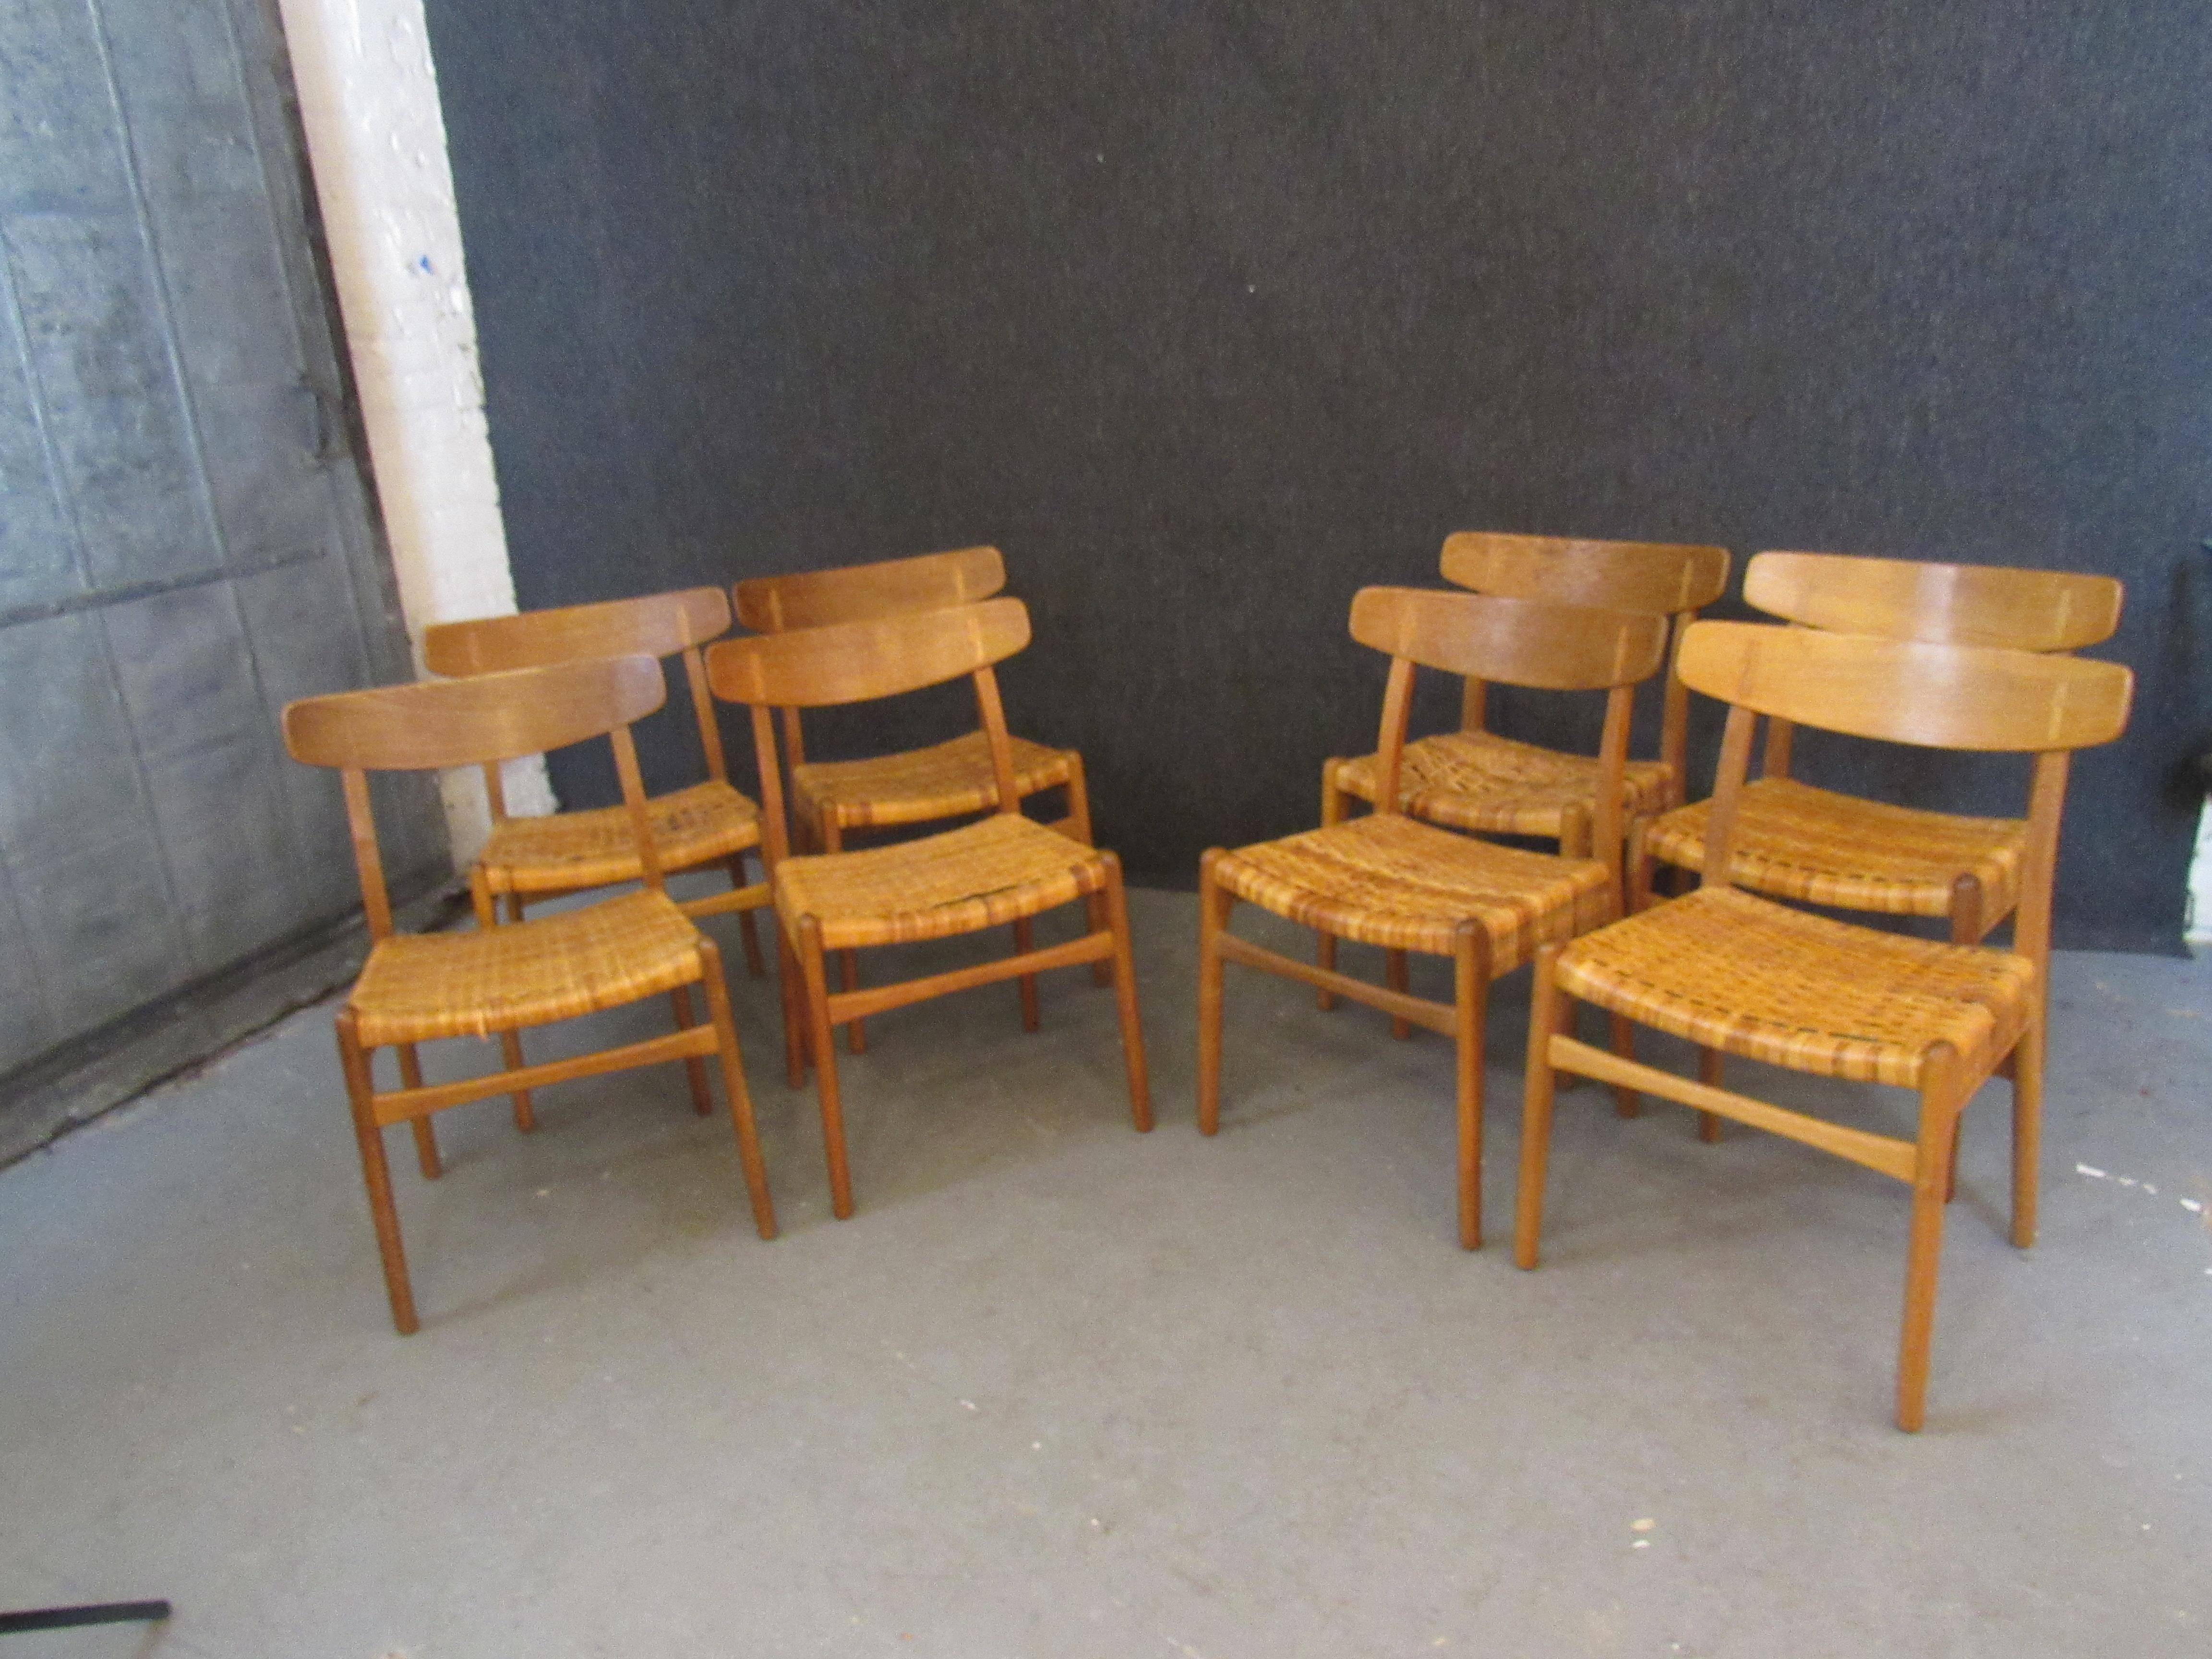 Holen Sie sich die authentischen dänischen Möbel aus der Mitte des Jahrhunderts nach Hause, um die Sie die Designwelt beneidet - mit diesem exquisiten Set aus originalen Hans Wegner CH-23 Esszimmerstühlen aus Eiche und Rattan. Die schöne Maserung